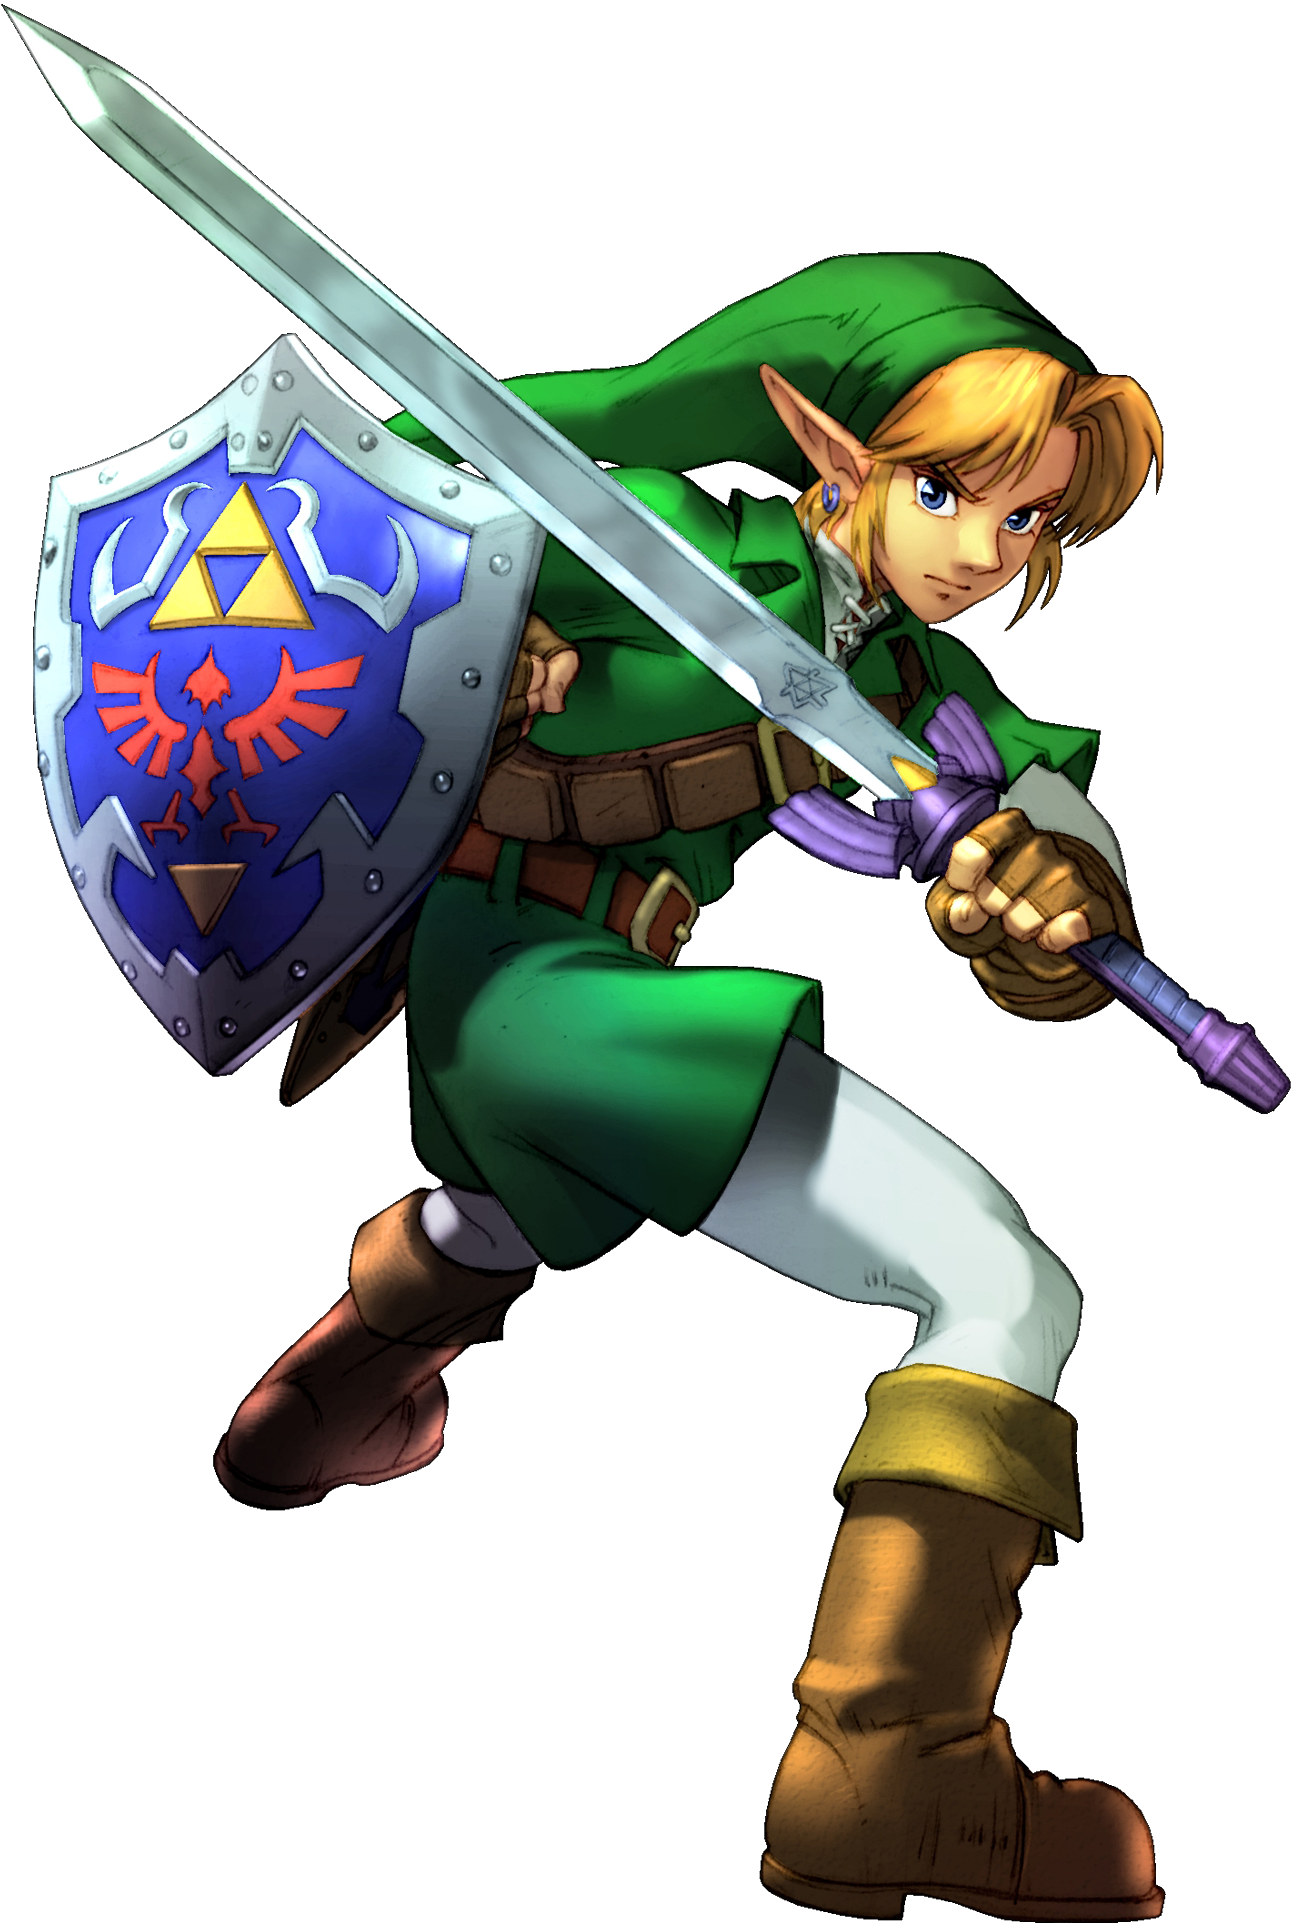 Zelda Link PNG Images, Zelda Link Clipart Free Download